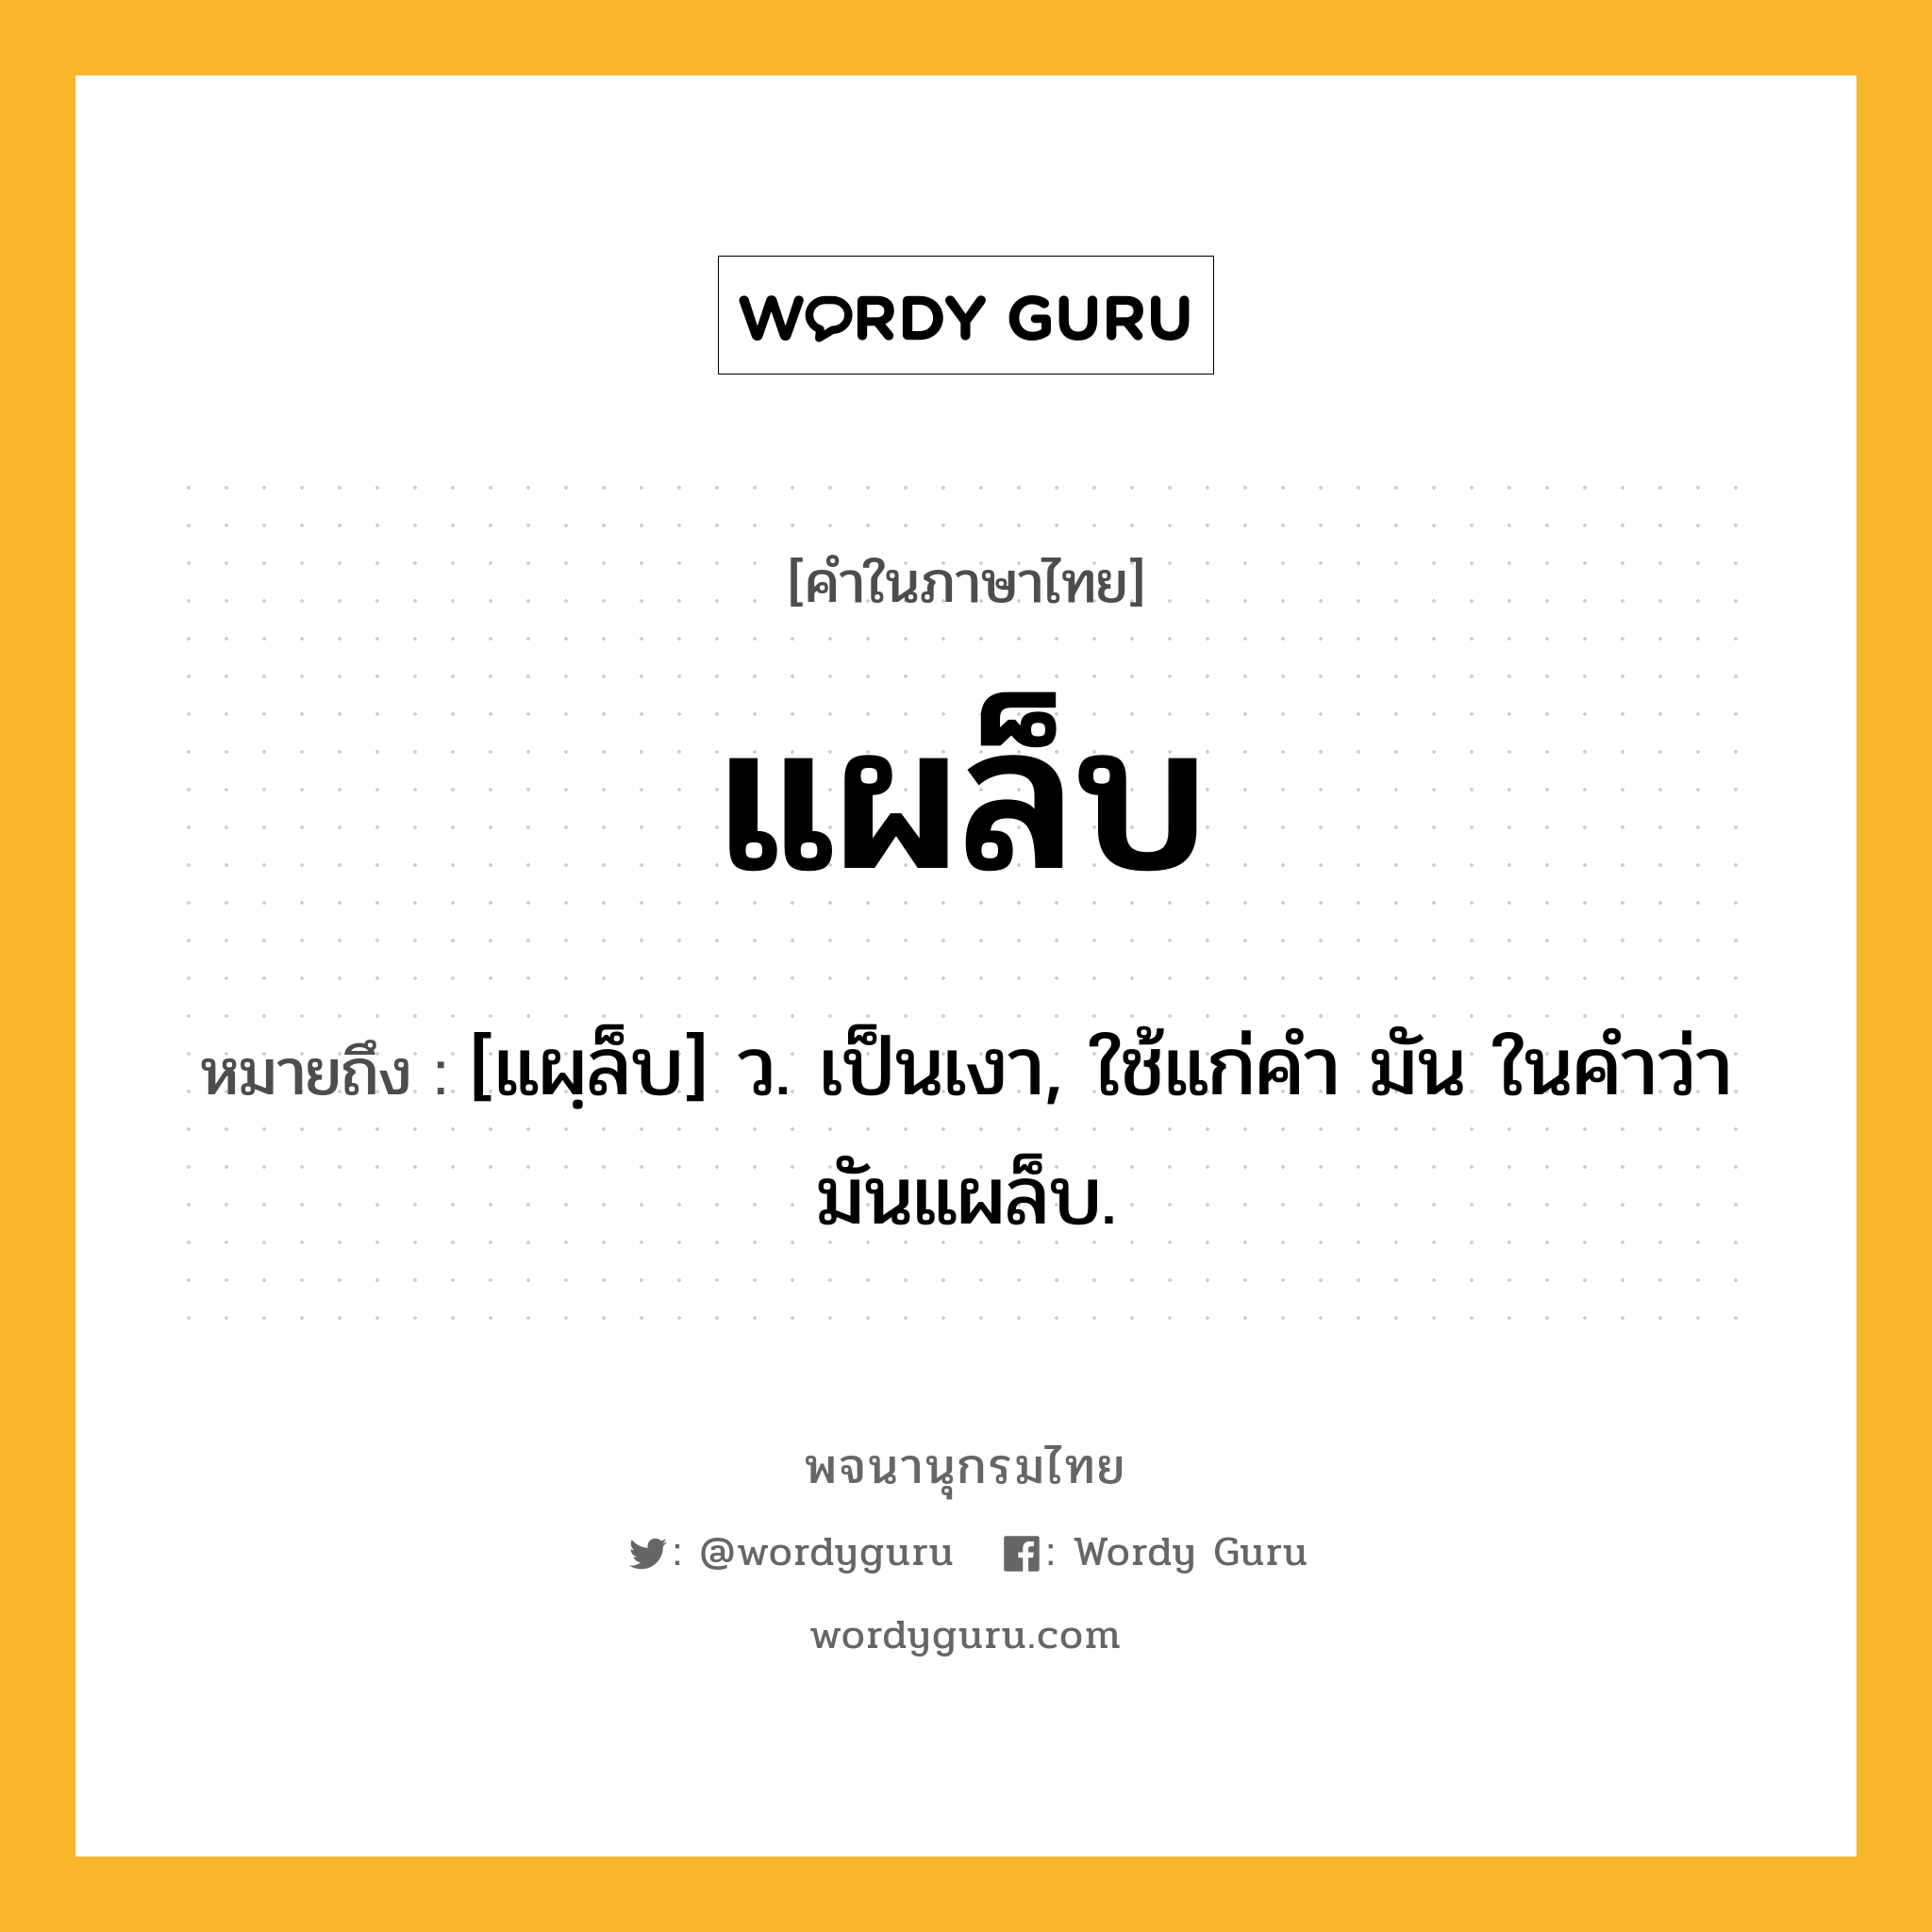 แผล็บ หมายถึงอะไร?, คำในภาษาไทย แผล็บ หมายถึง [แผฺล็บ] ว. เป็นเงา, ใช้แก่คำ มัน ในคำว่า มันแผล็บ.